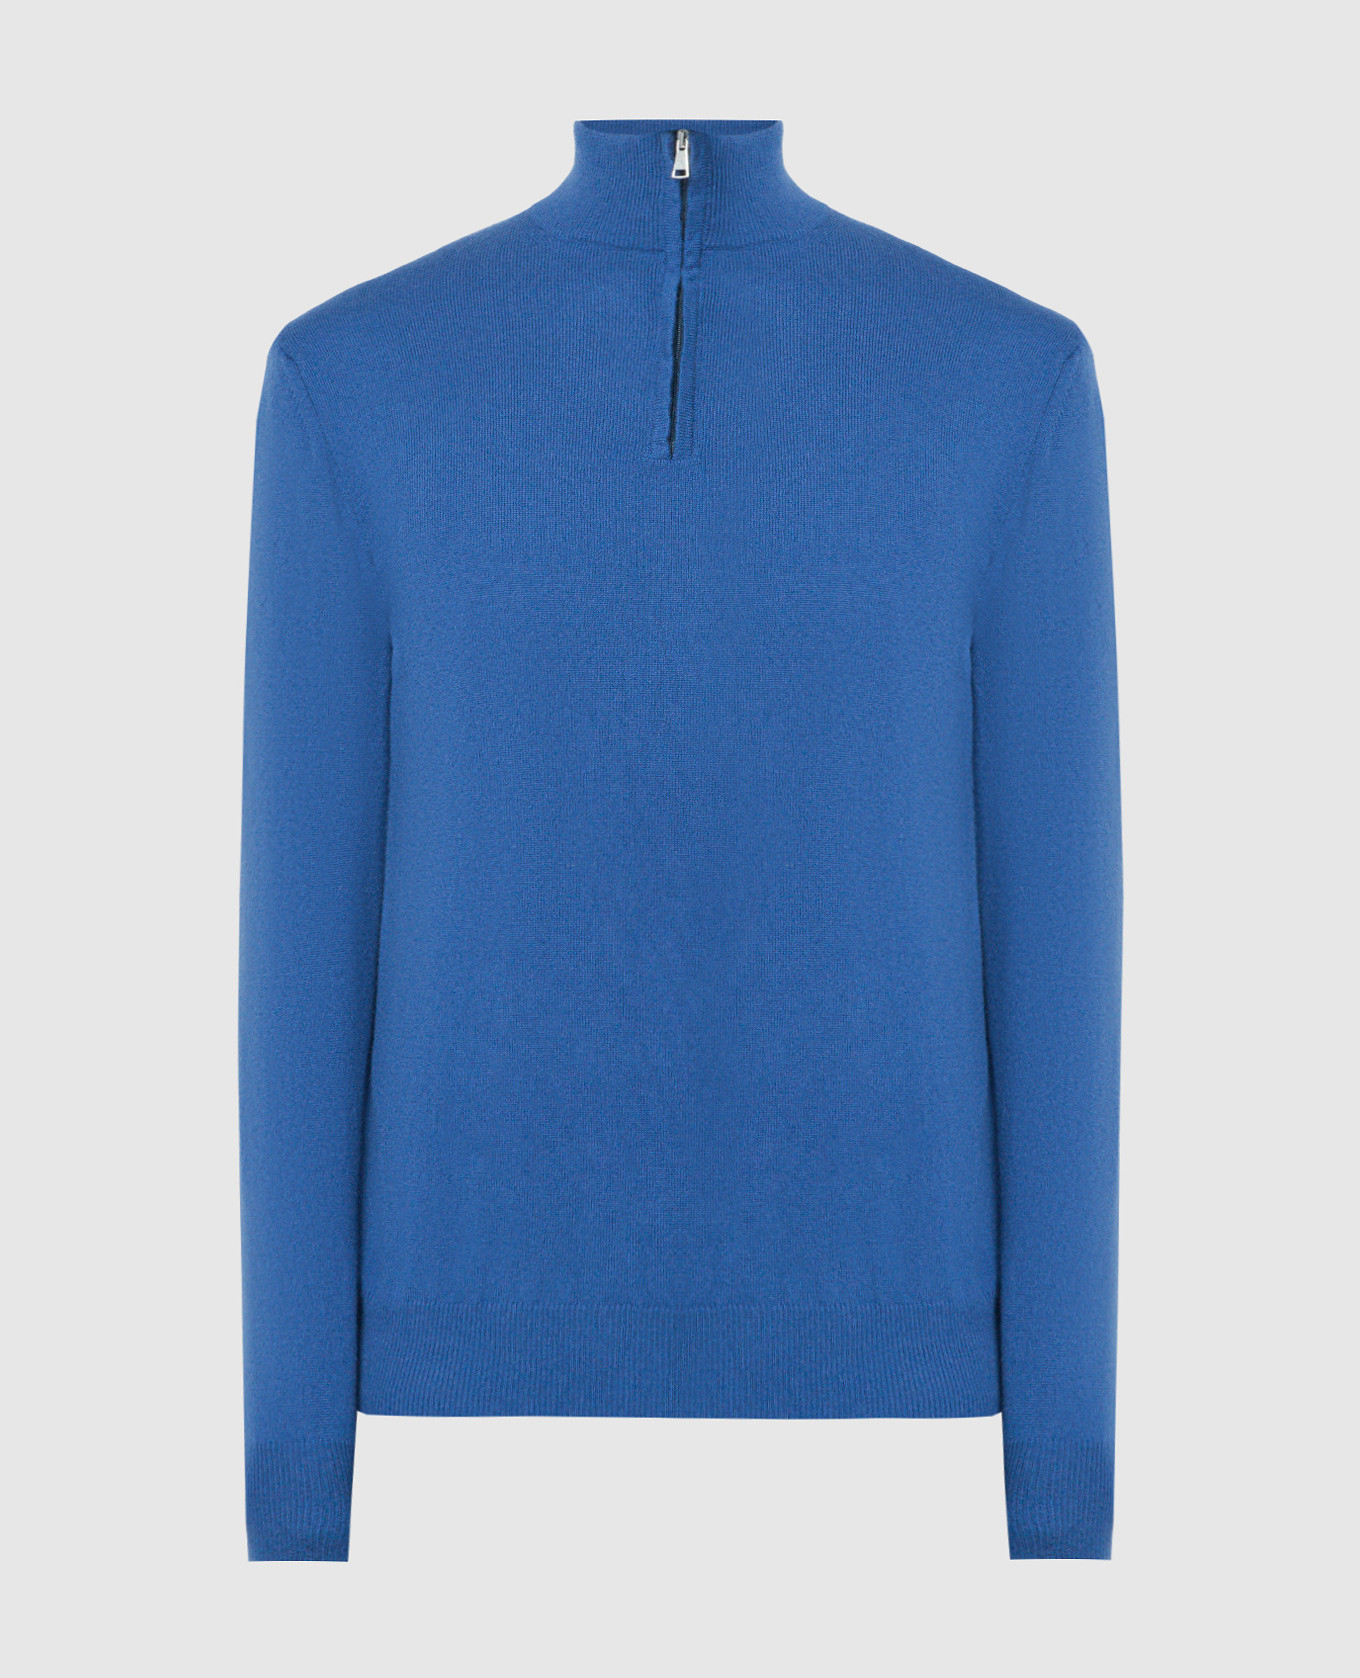 Blue cashmere jumper with zipper